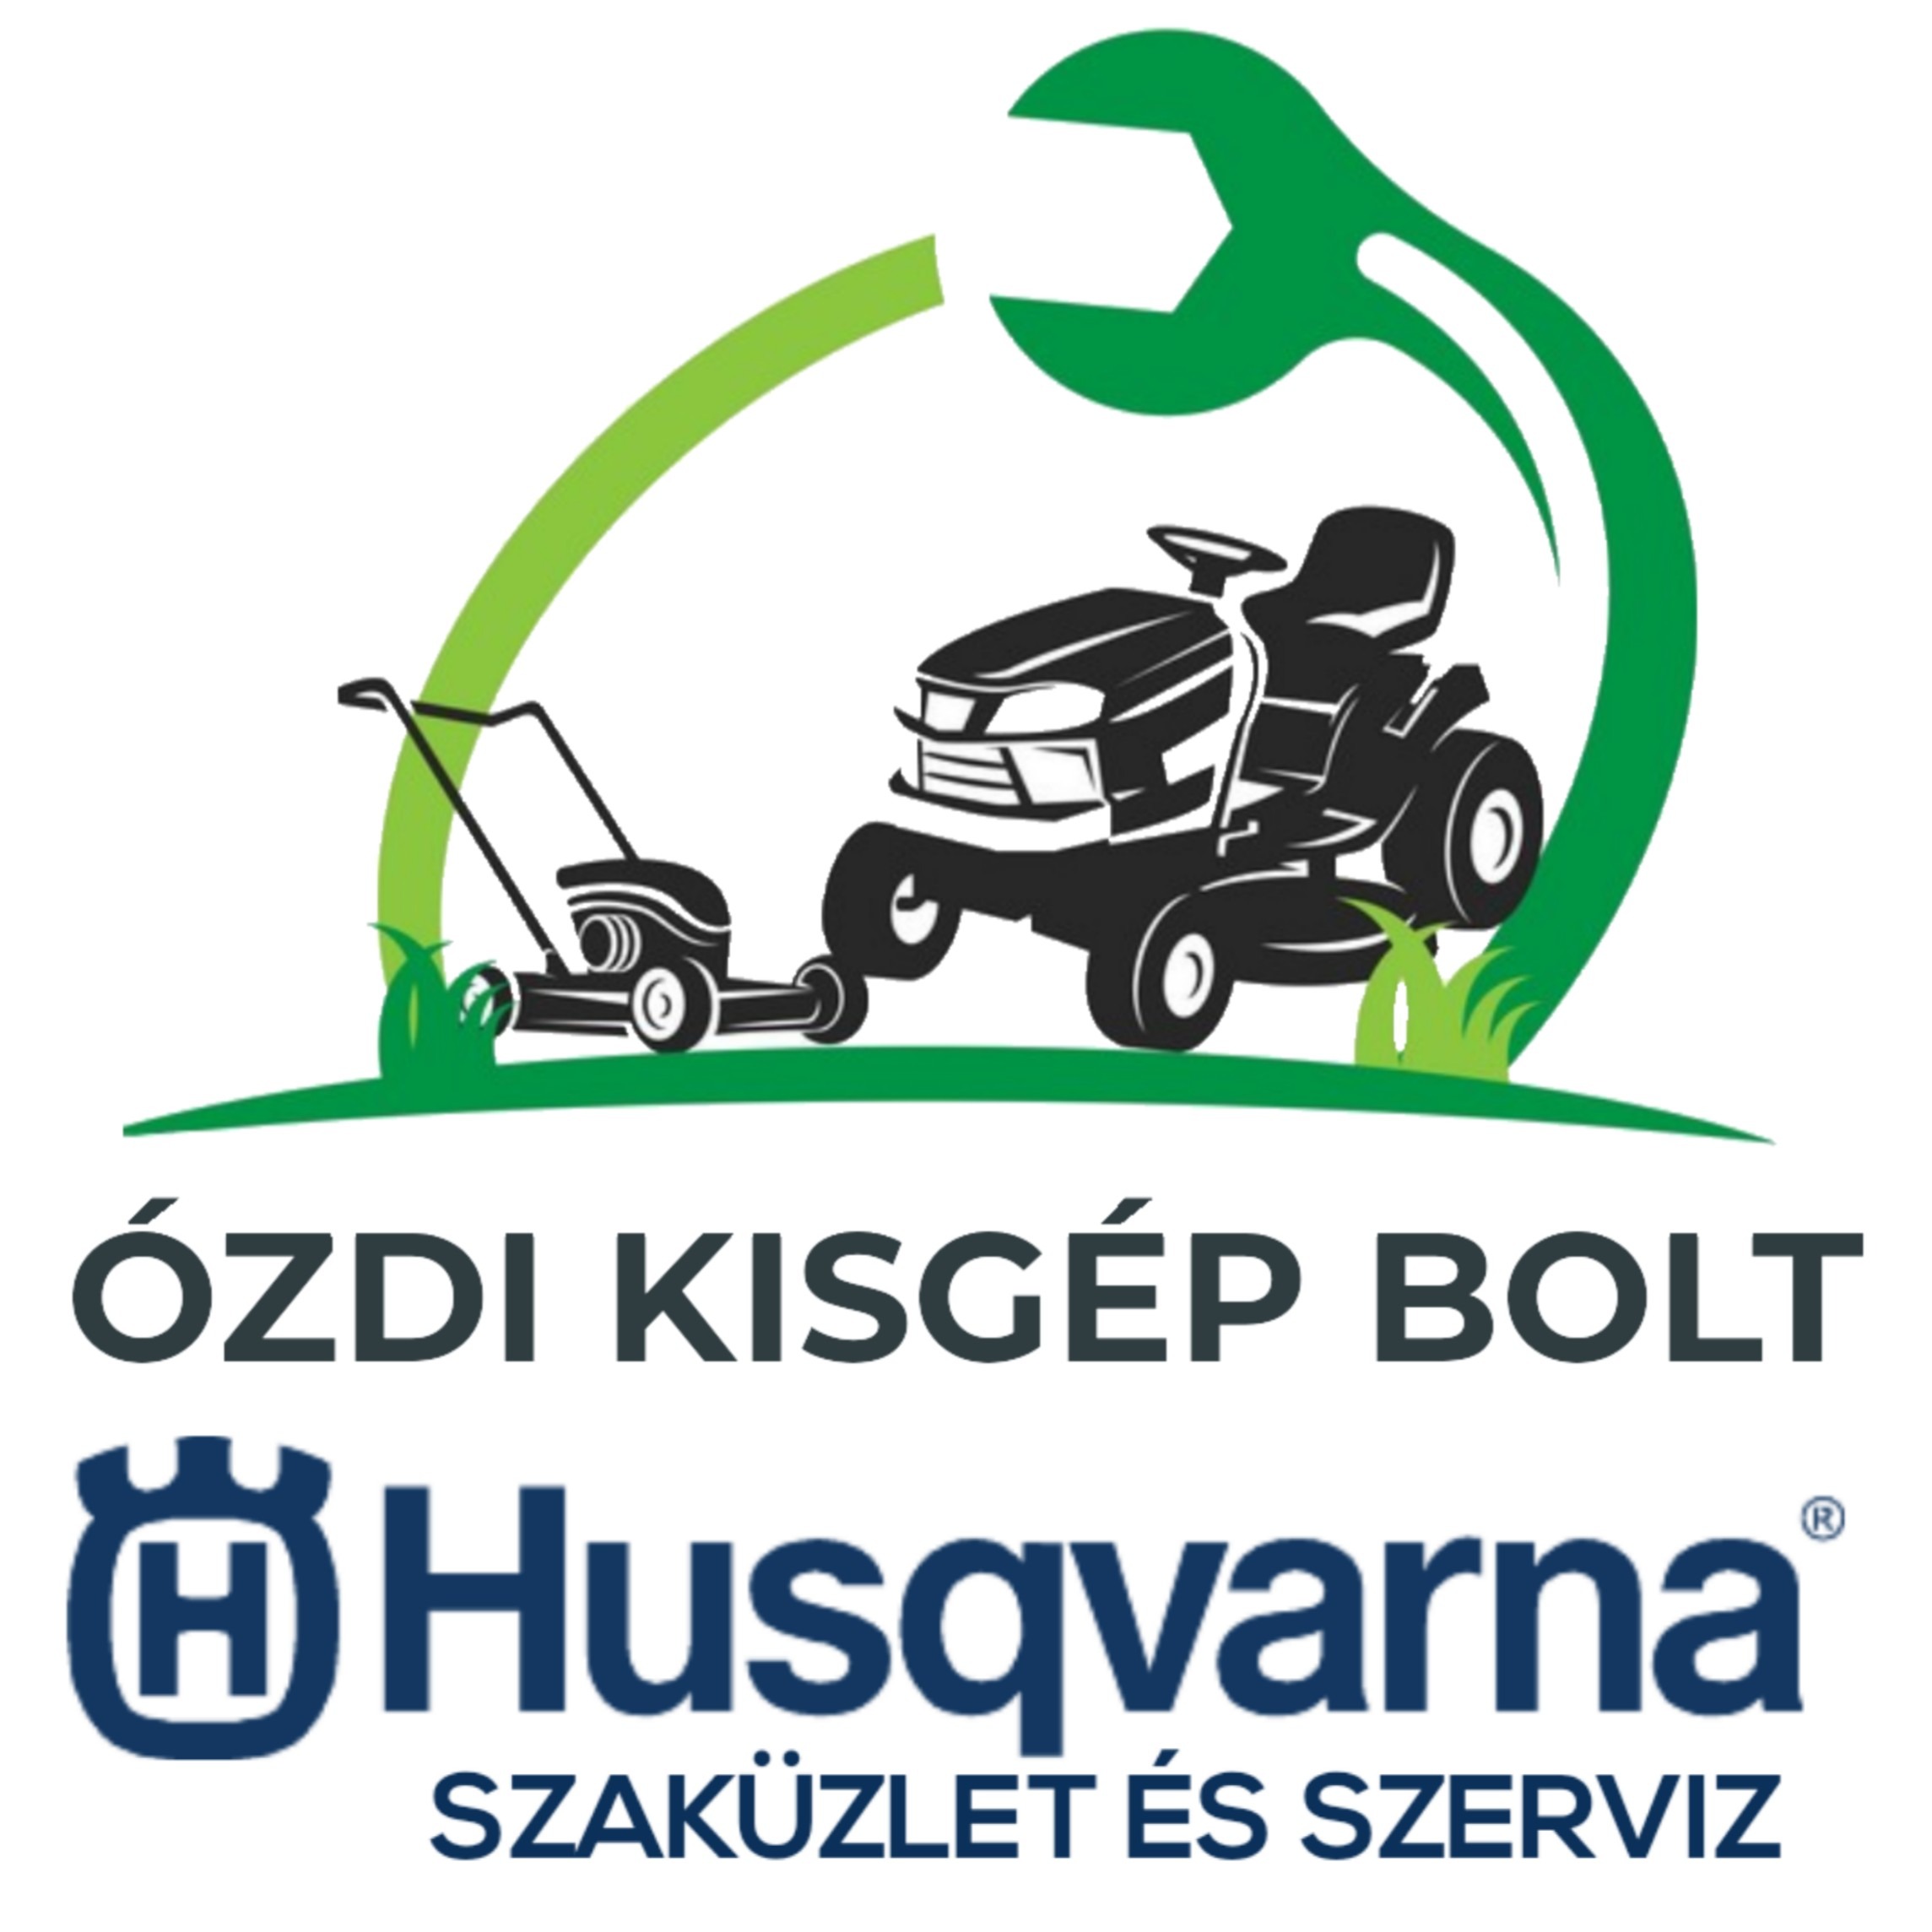 Husqvarna Szaküzlet és Szerviz Logo